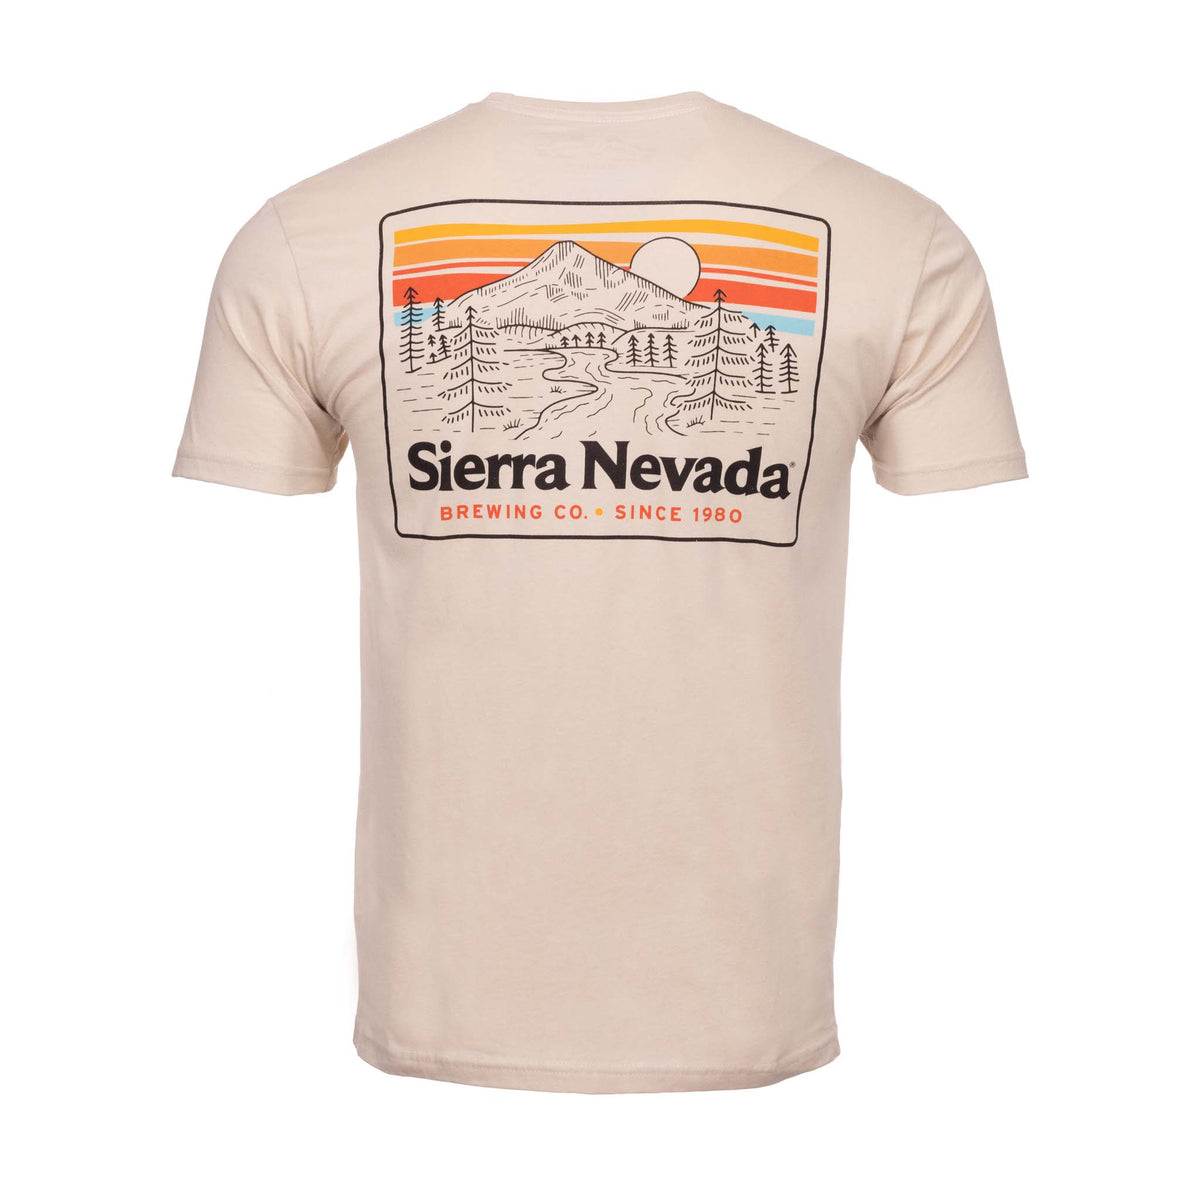 Sierra Nevada Trail Cream T-Shirt - Back view